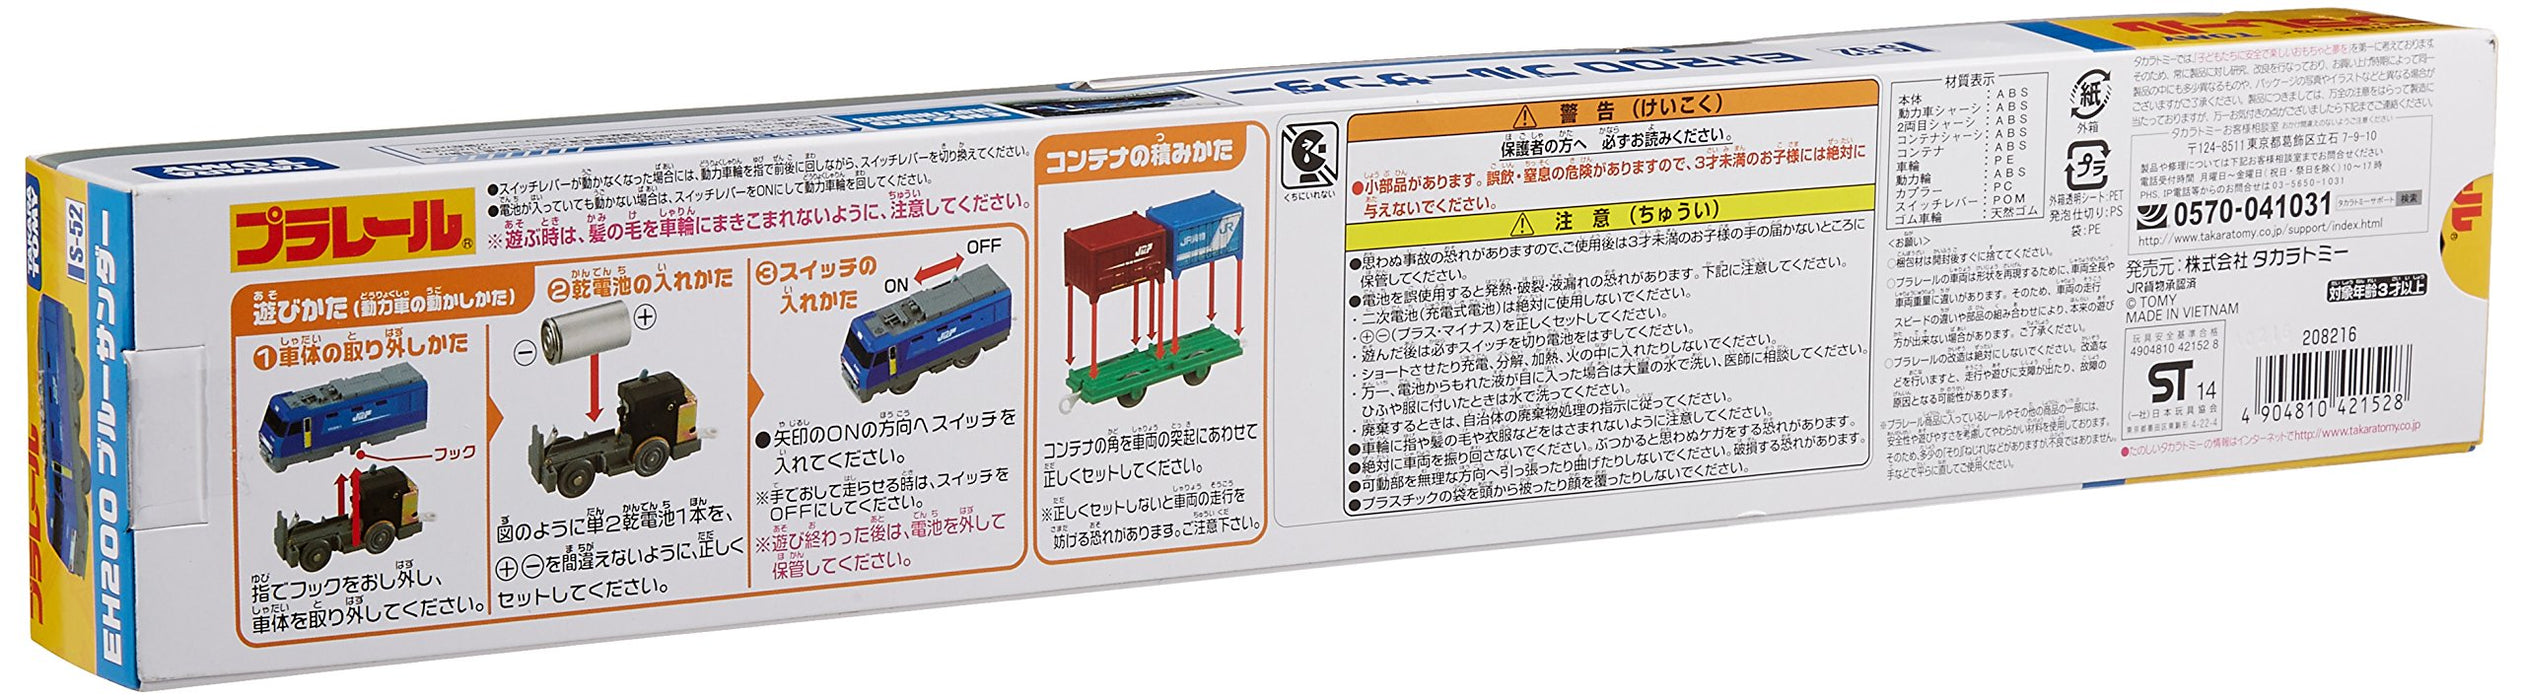 Takara Tomy S-52 Eh200 Blue Thunder Plarail Plastic Train Models Made In Japan